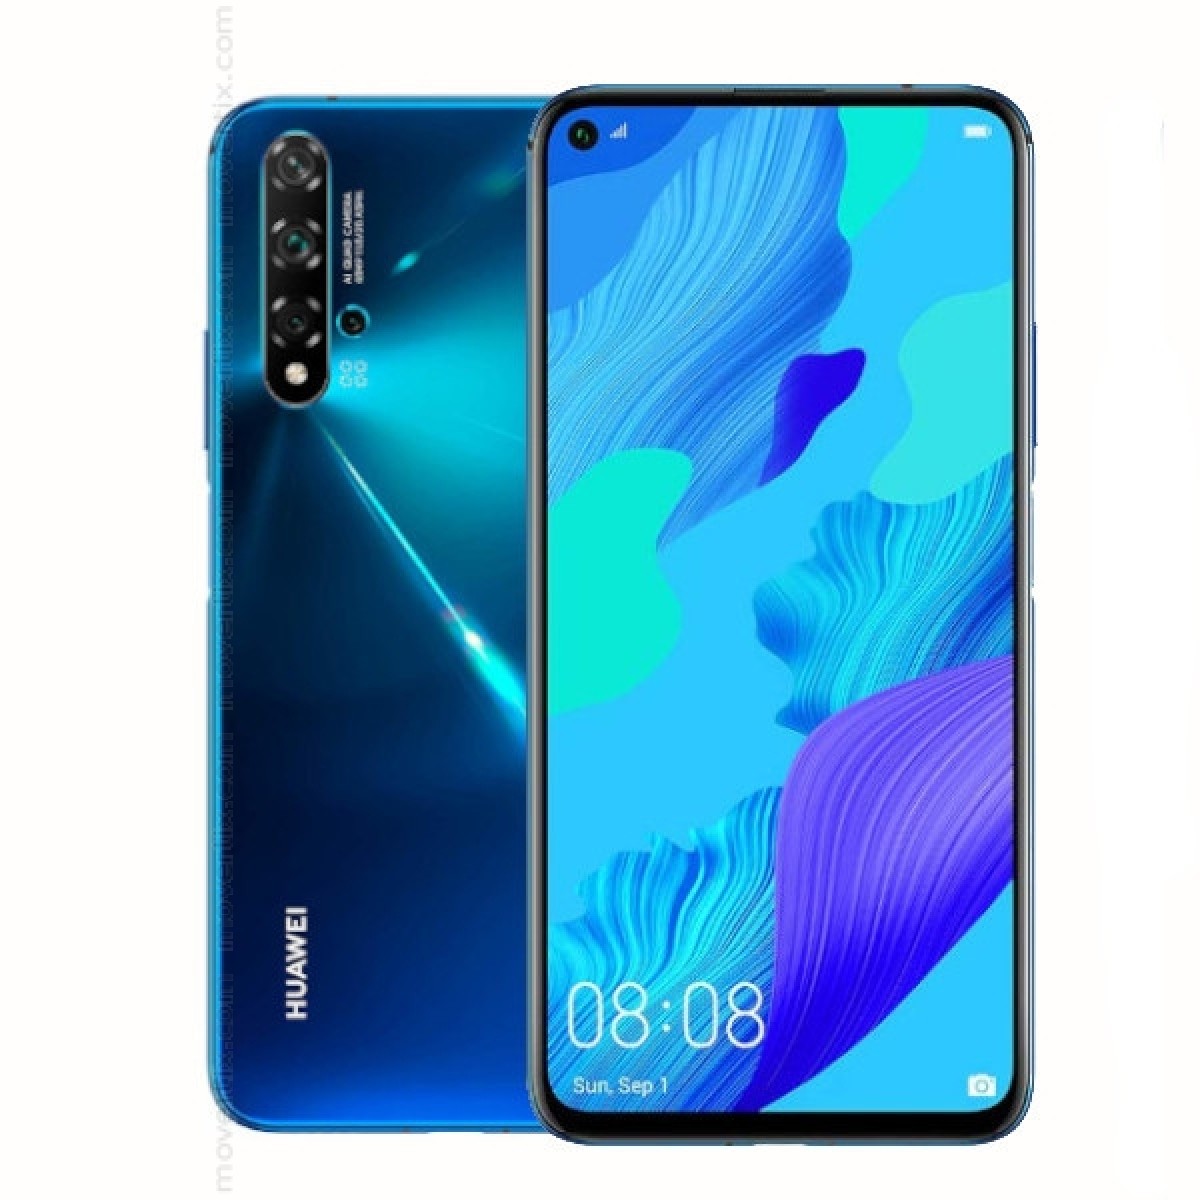  Huawei  Nova 5T Dual SIM Crush Blue 128GB and 6GB RAM 